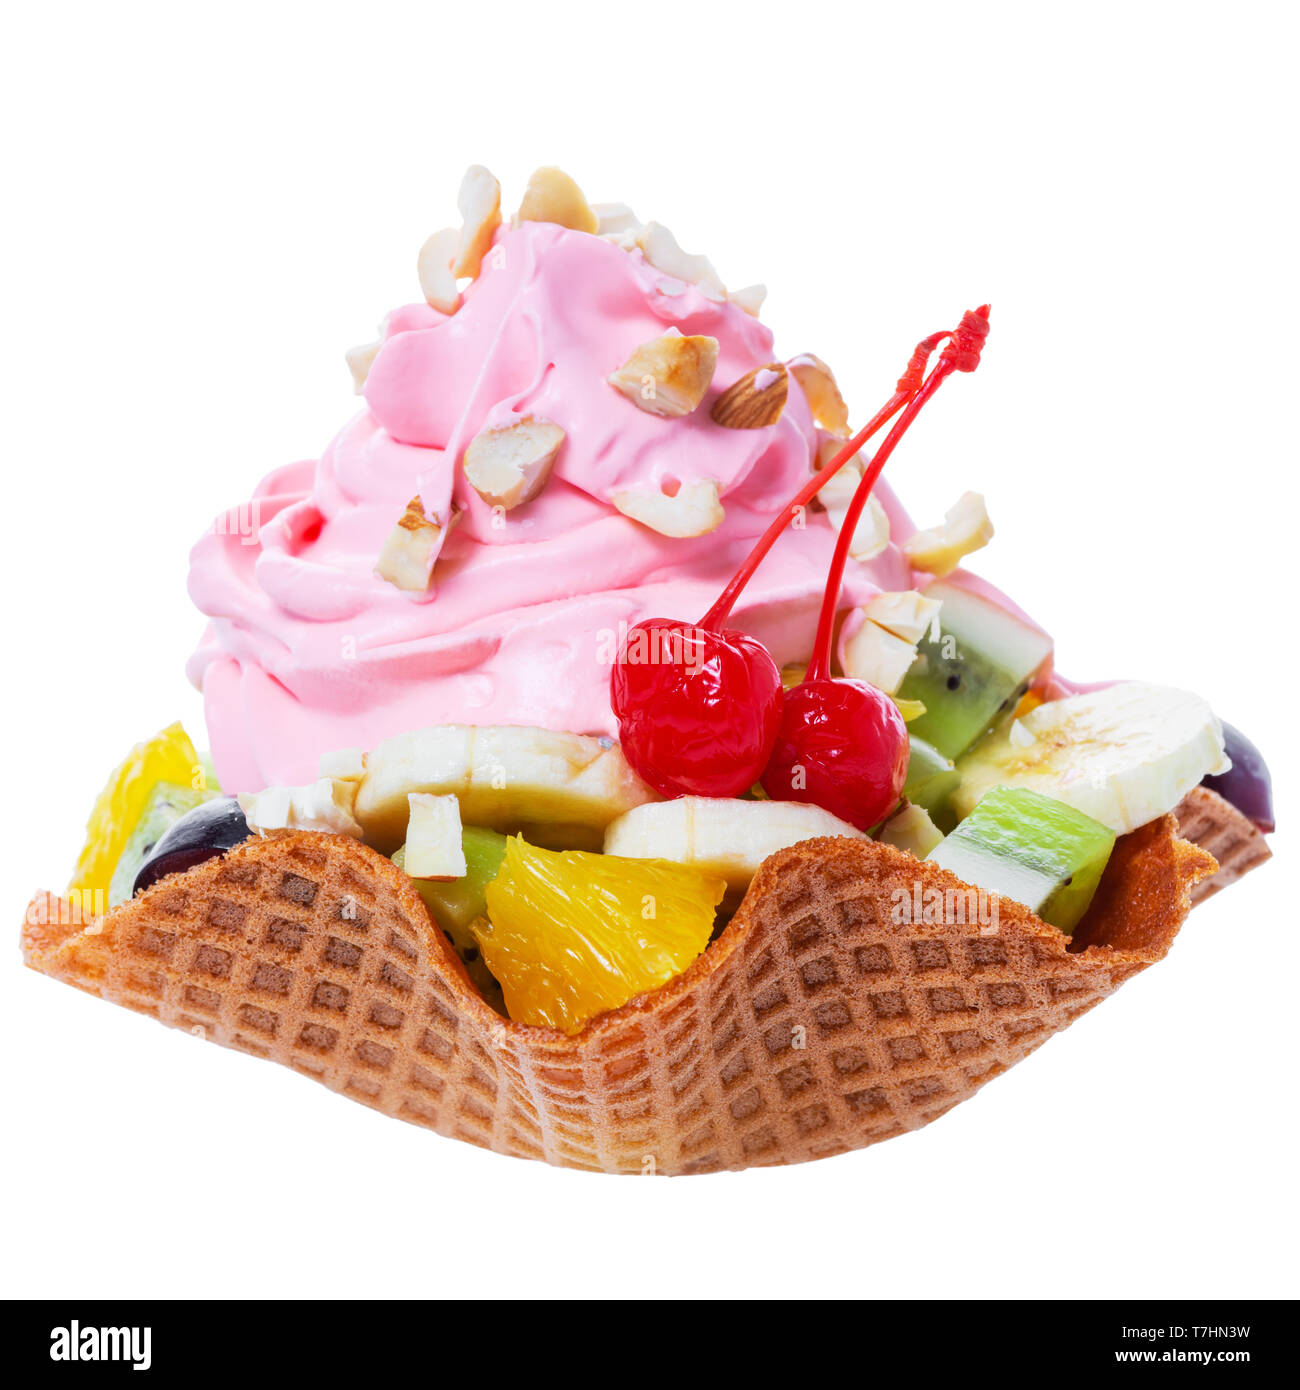 Frisch geschnittene Früchte im Waffle rosa Kegel Schüssel mit Sahne und Nüssen dekoriert maraschino Kirsche ist auf weißem Hintergrund Stockfoto